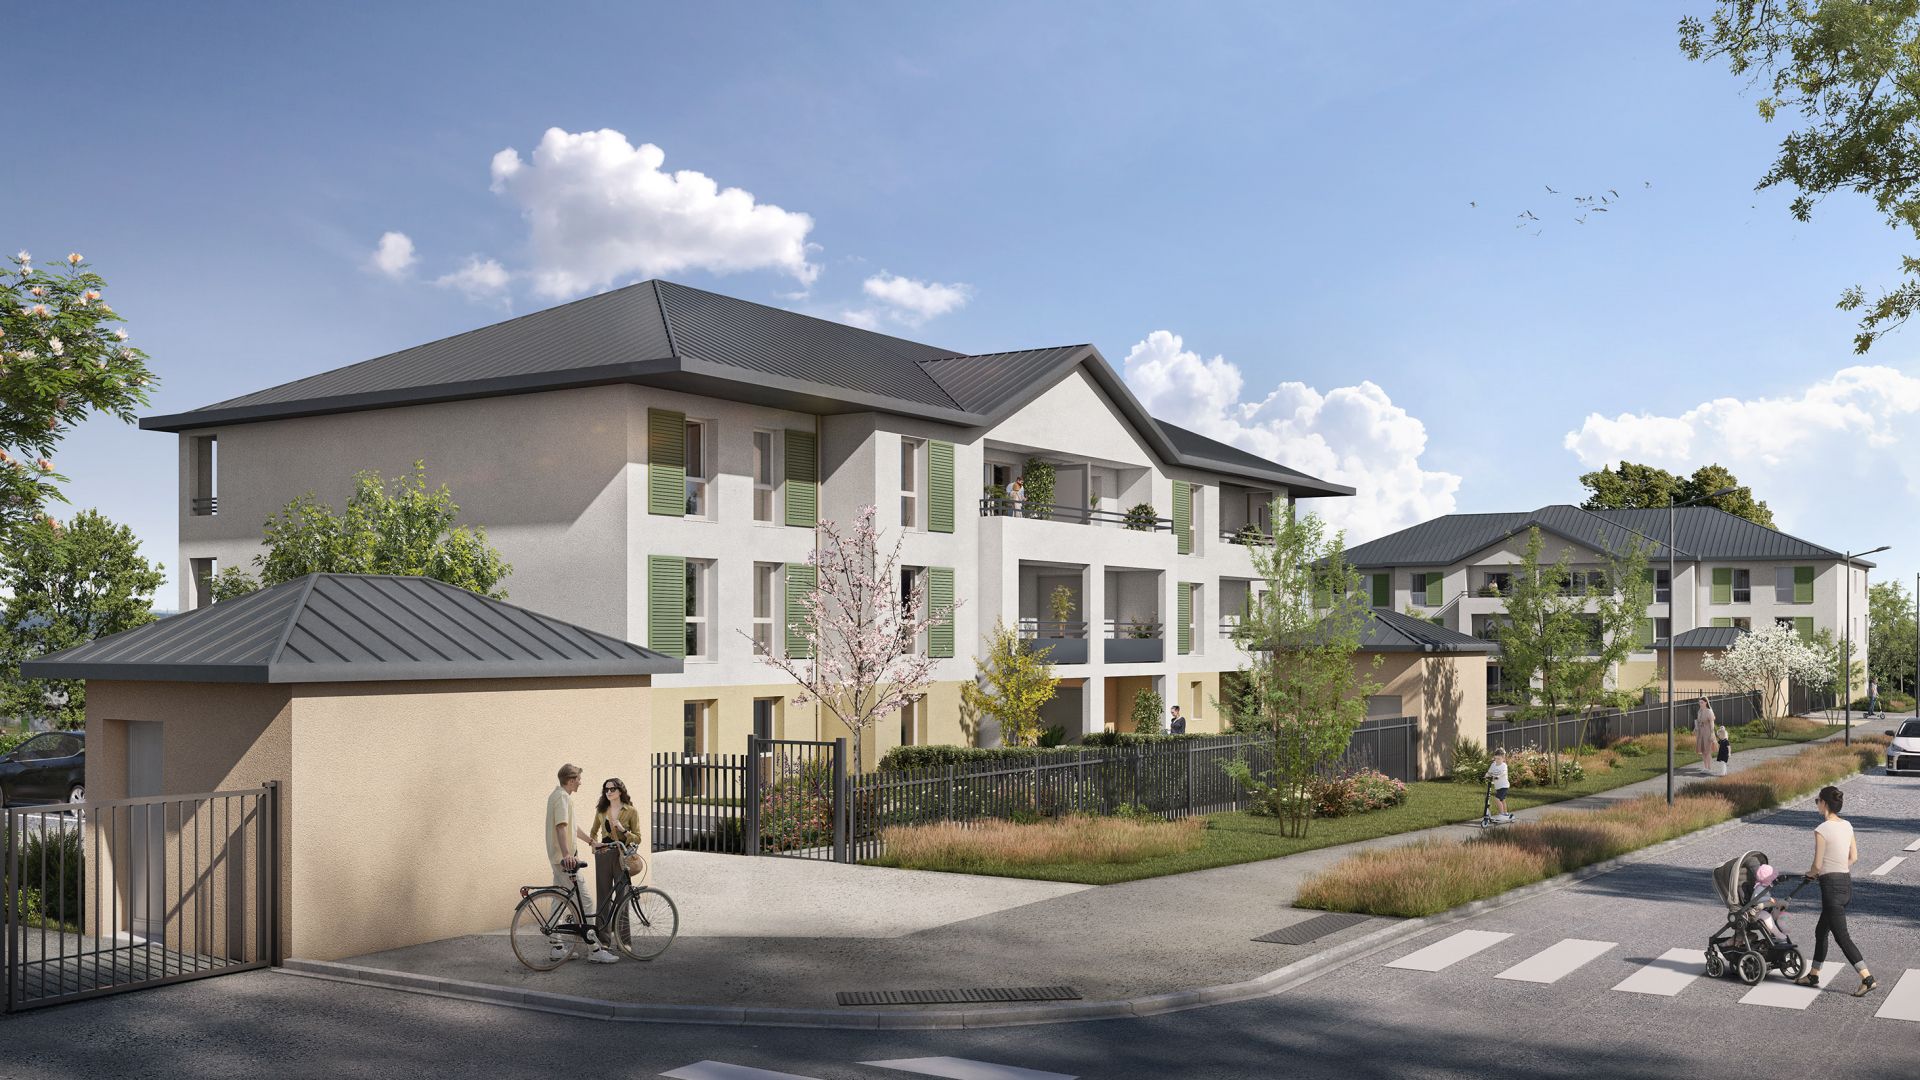 Greencity immobilier - achat appartements neufs du T2 au T3 - Résidence Le Madaillan - 60160 Montataire  